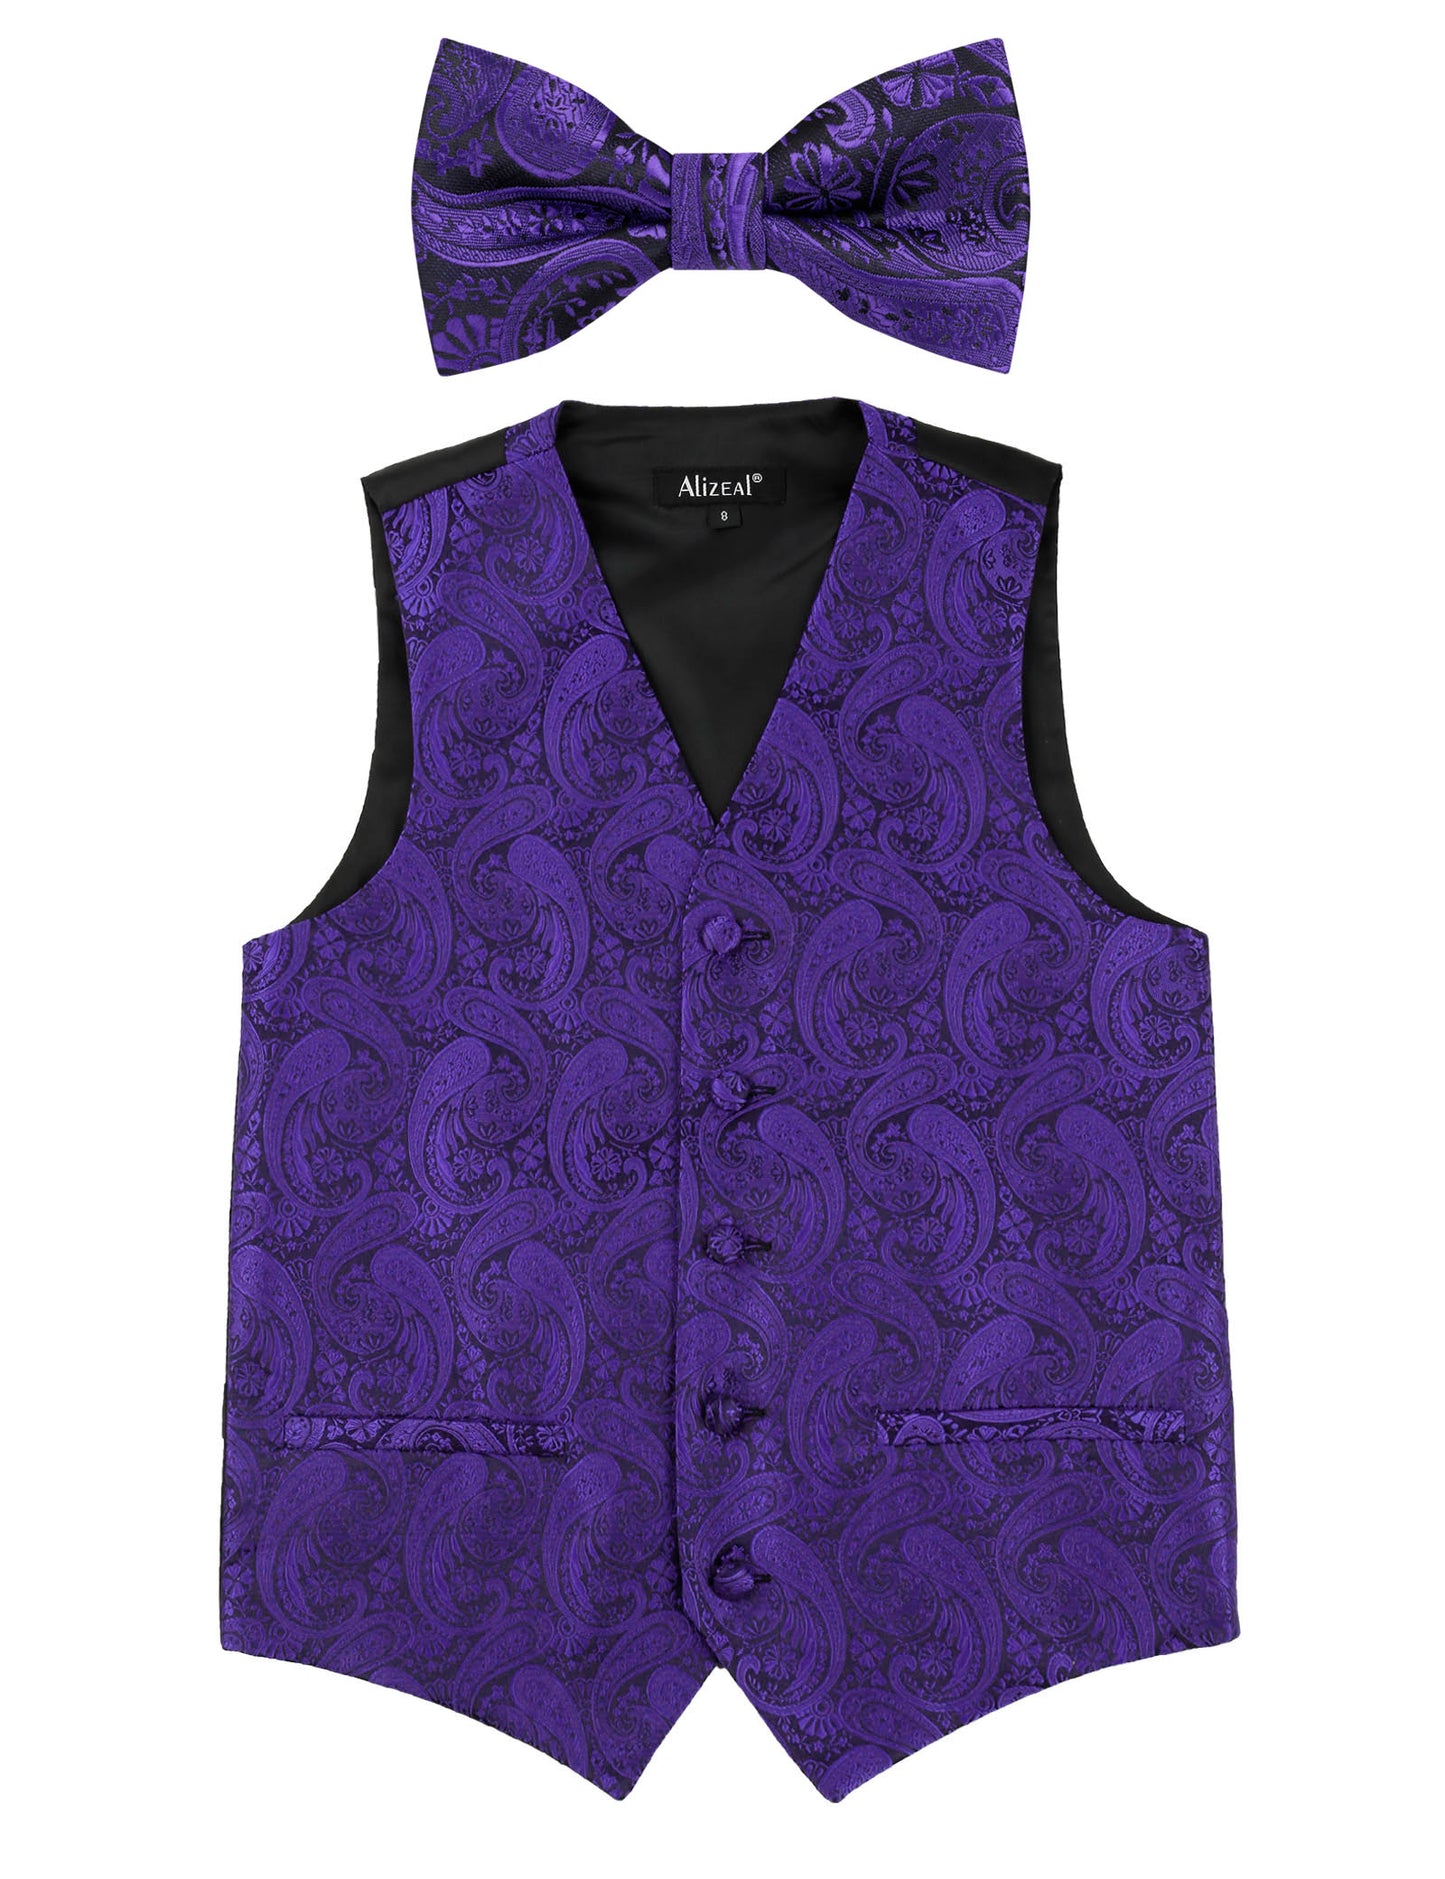 Boy's Paisley Jacquard Pre-Tied Bow Tie with Classic Floral Dress Suit Vest Set, 077-Dark Purple